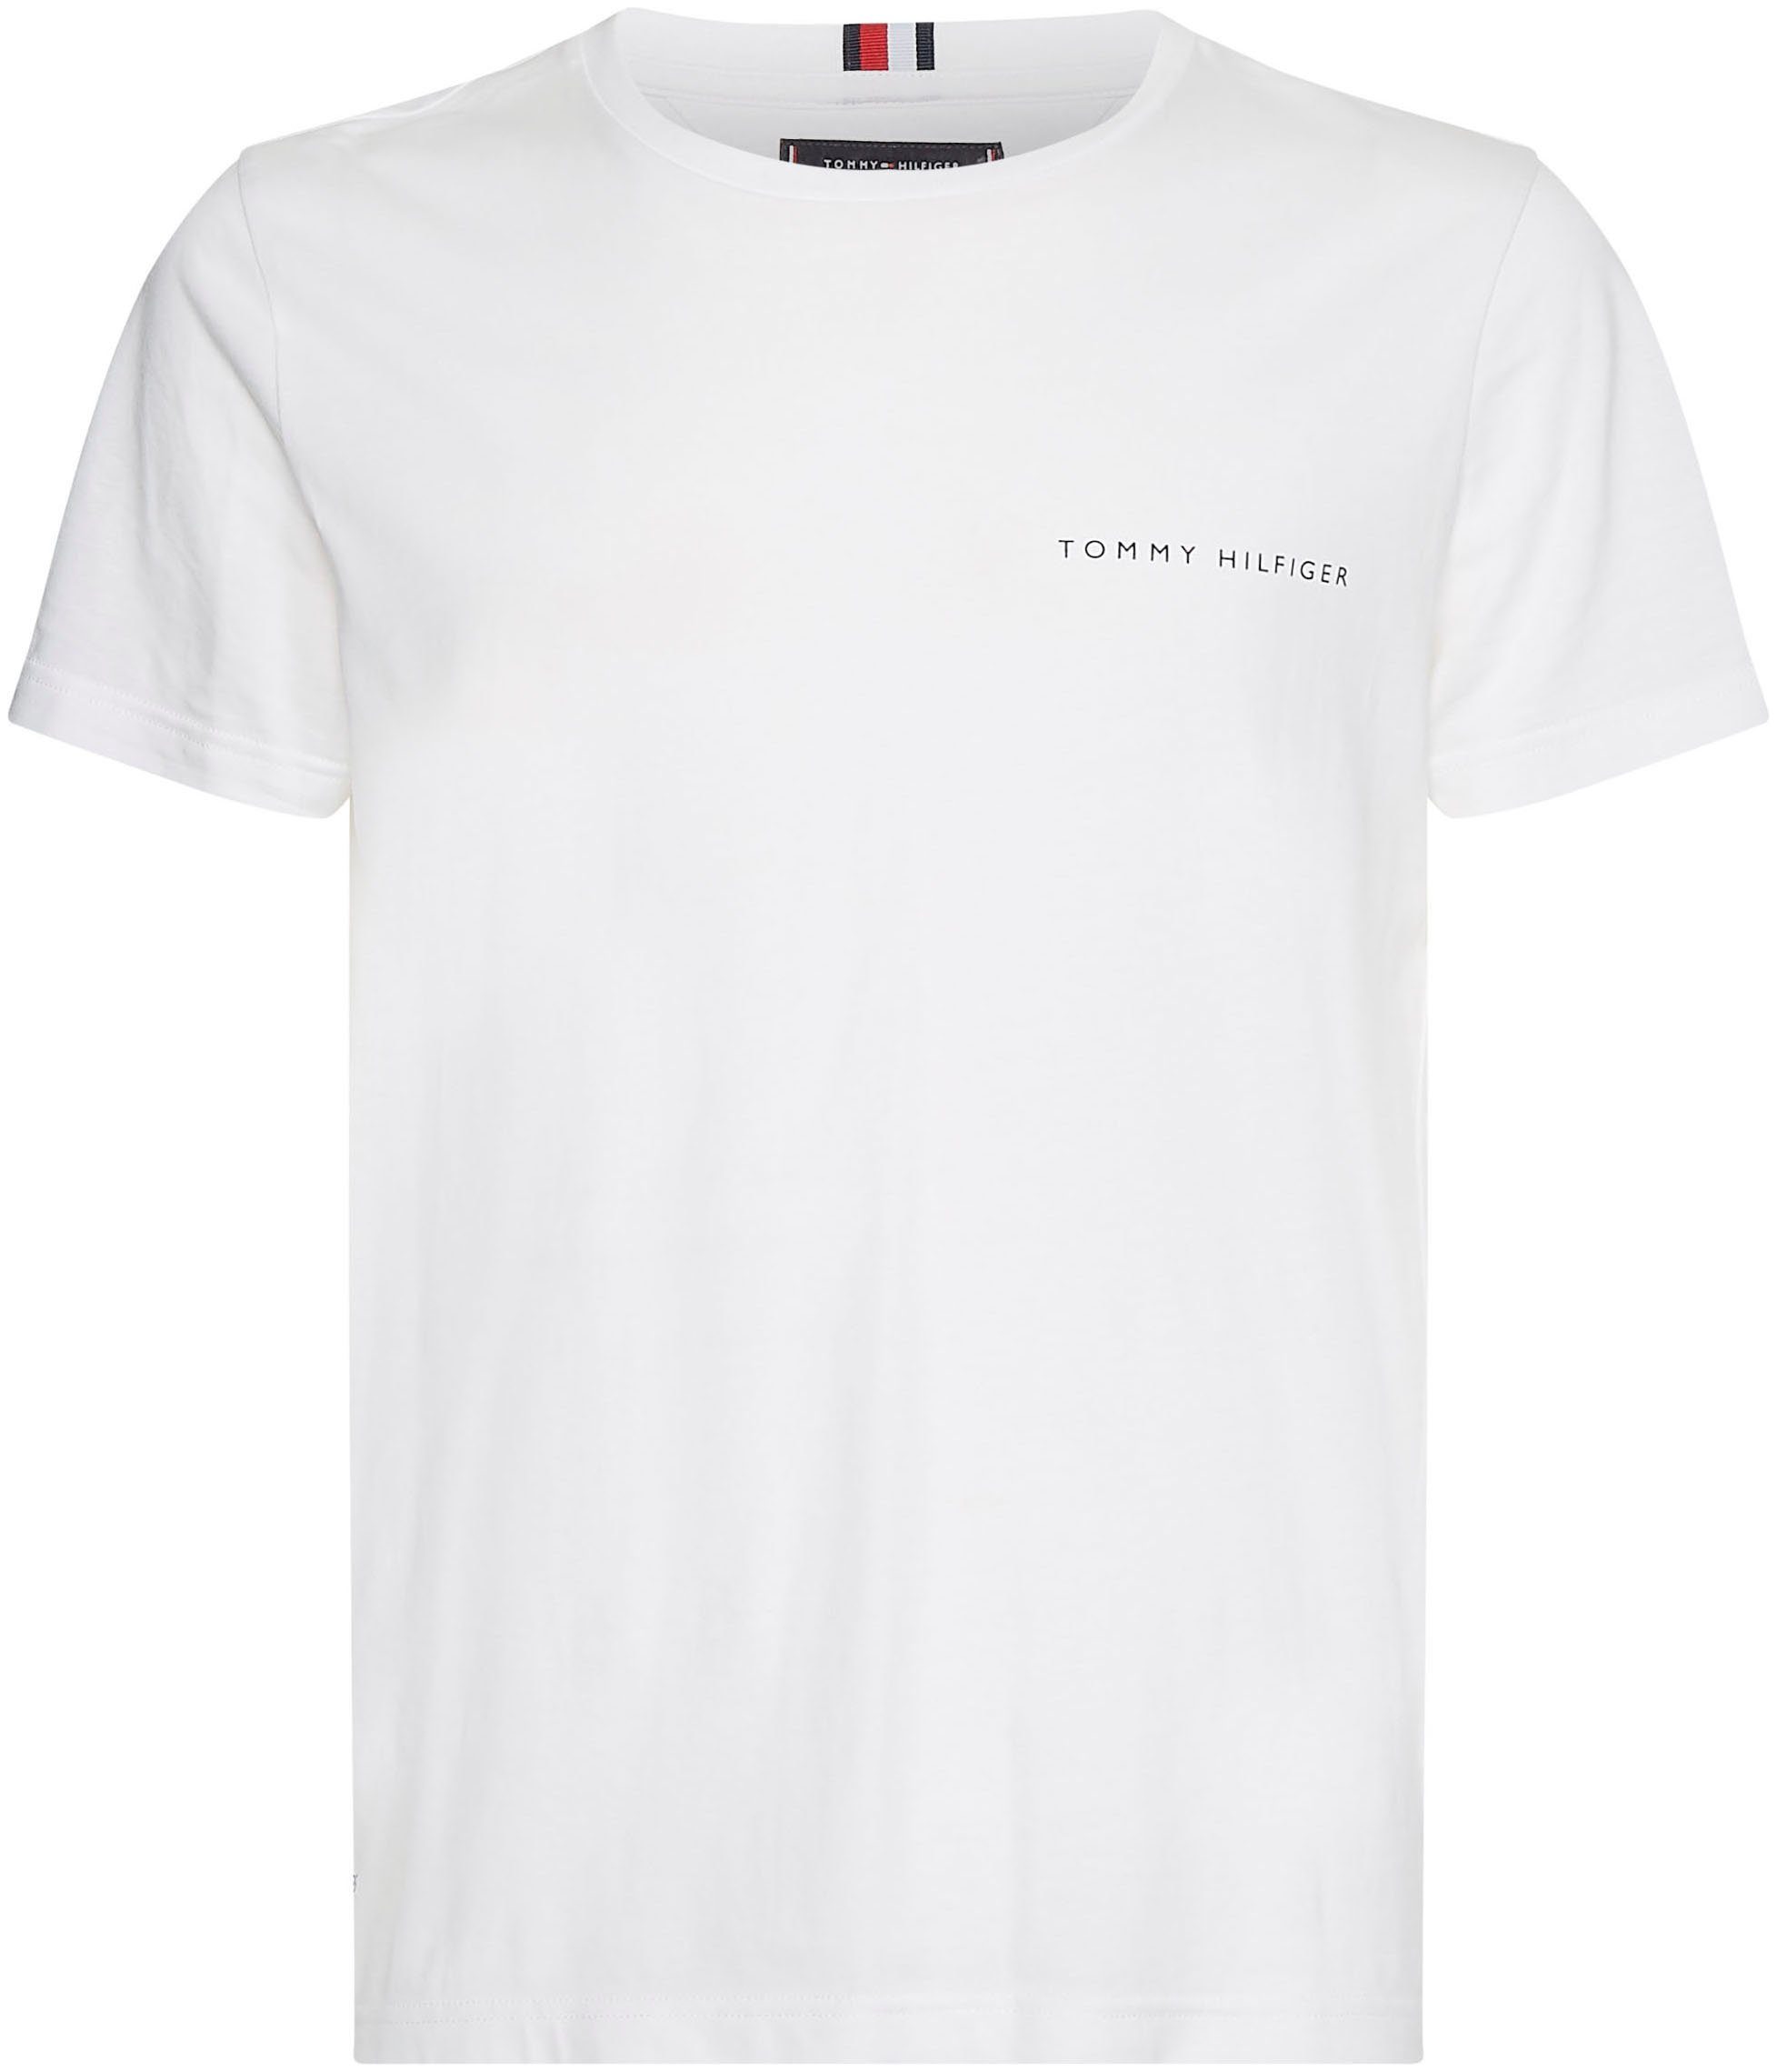 MULTI T-Shirt Hilfiger weiß Tommy PLACEMENT TEE im schlichten Design